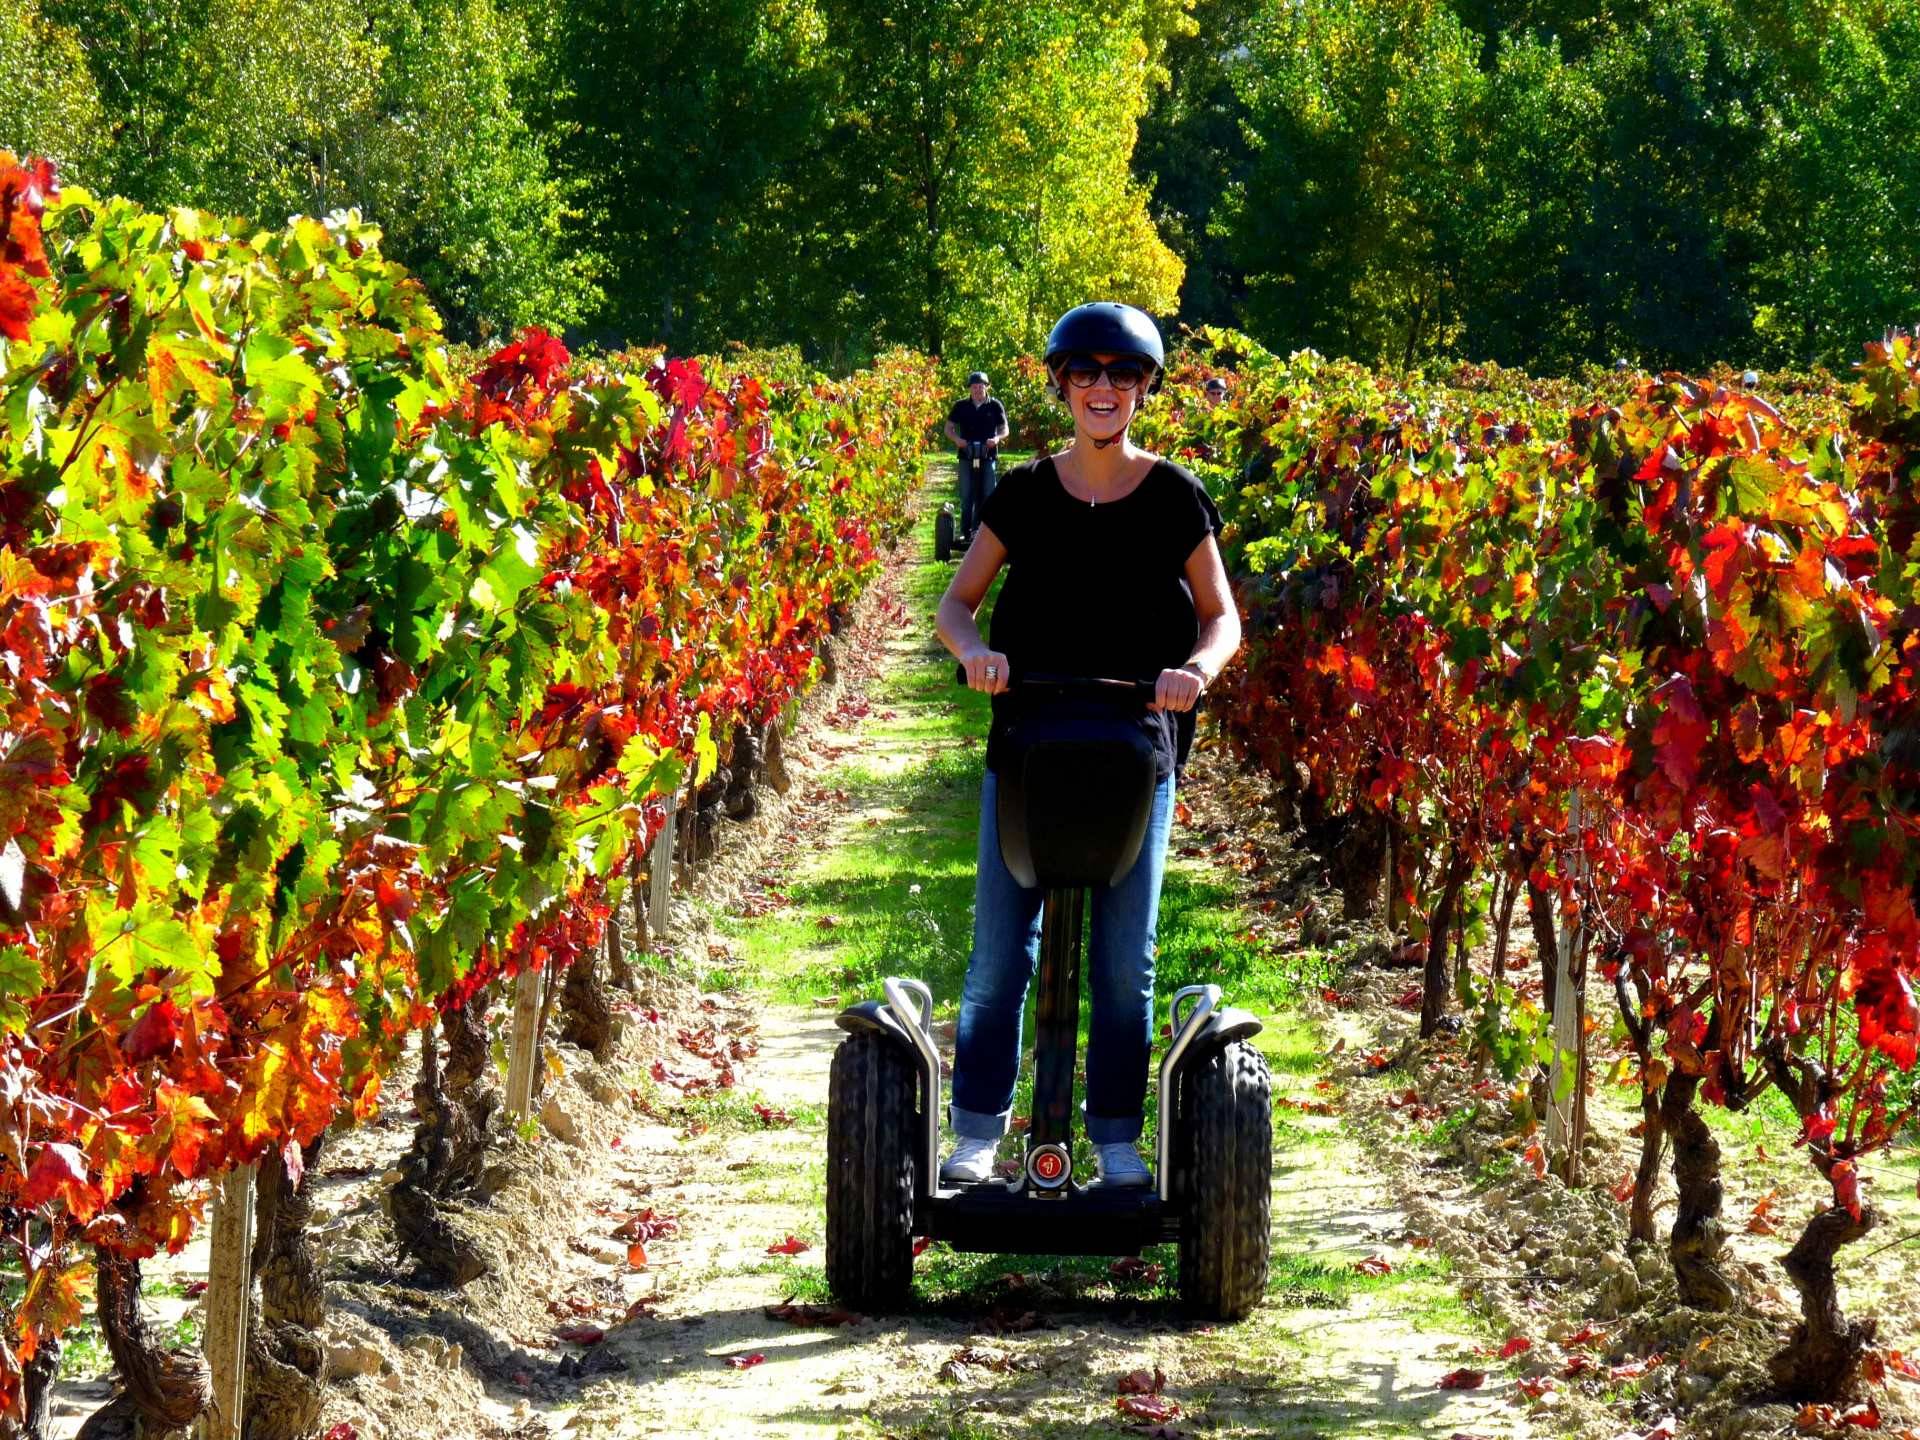 Rutas en segway entre viñedos, una forma ecológica y divertida de conocer el origen del vino en La Rioja.